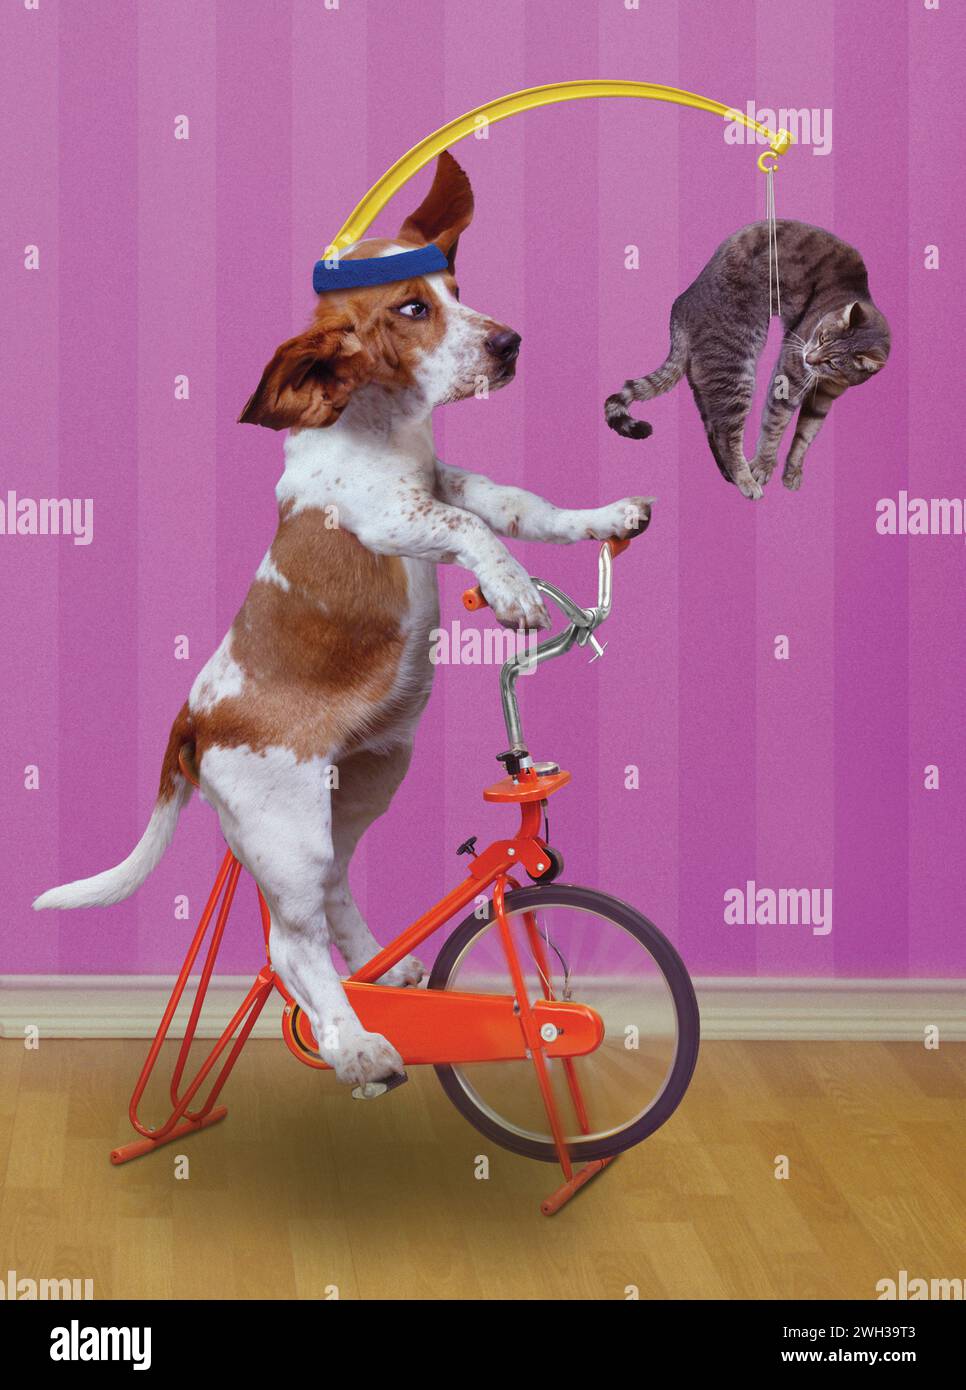 Un drôle Basset Hound pédale un vélo d'exercice stationnaire tandis qu'un chat est suspendu à une barre fixée à sa tête dans un regard humoristique sur la motivation et l'exercice. Banque D'Images